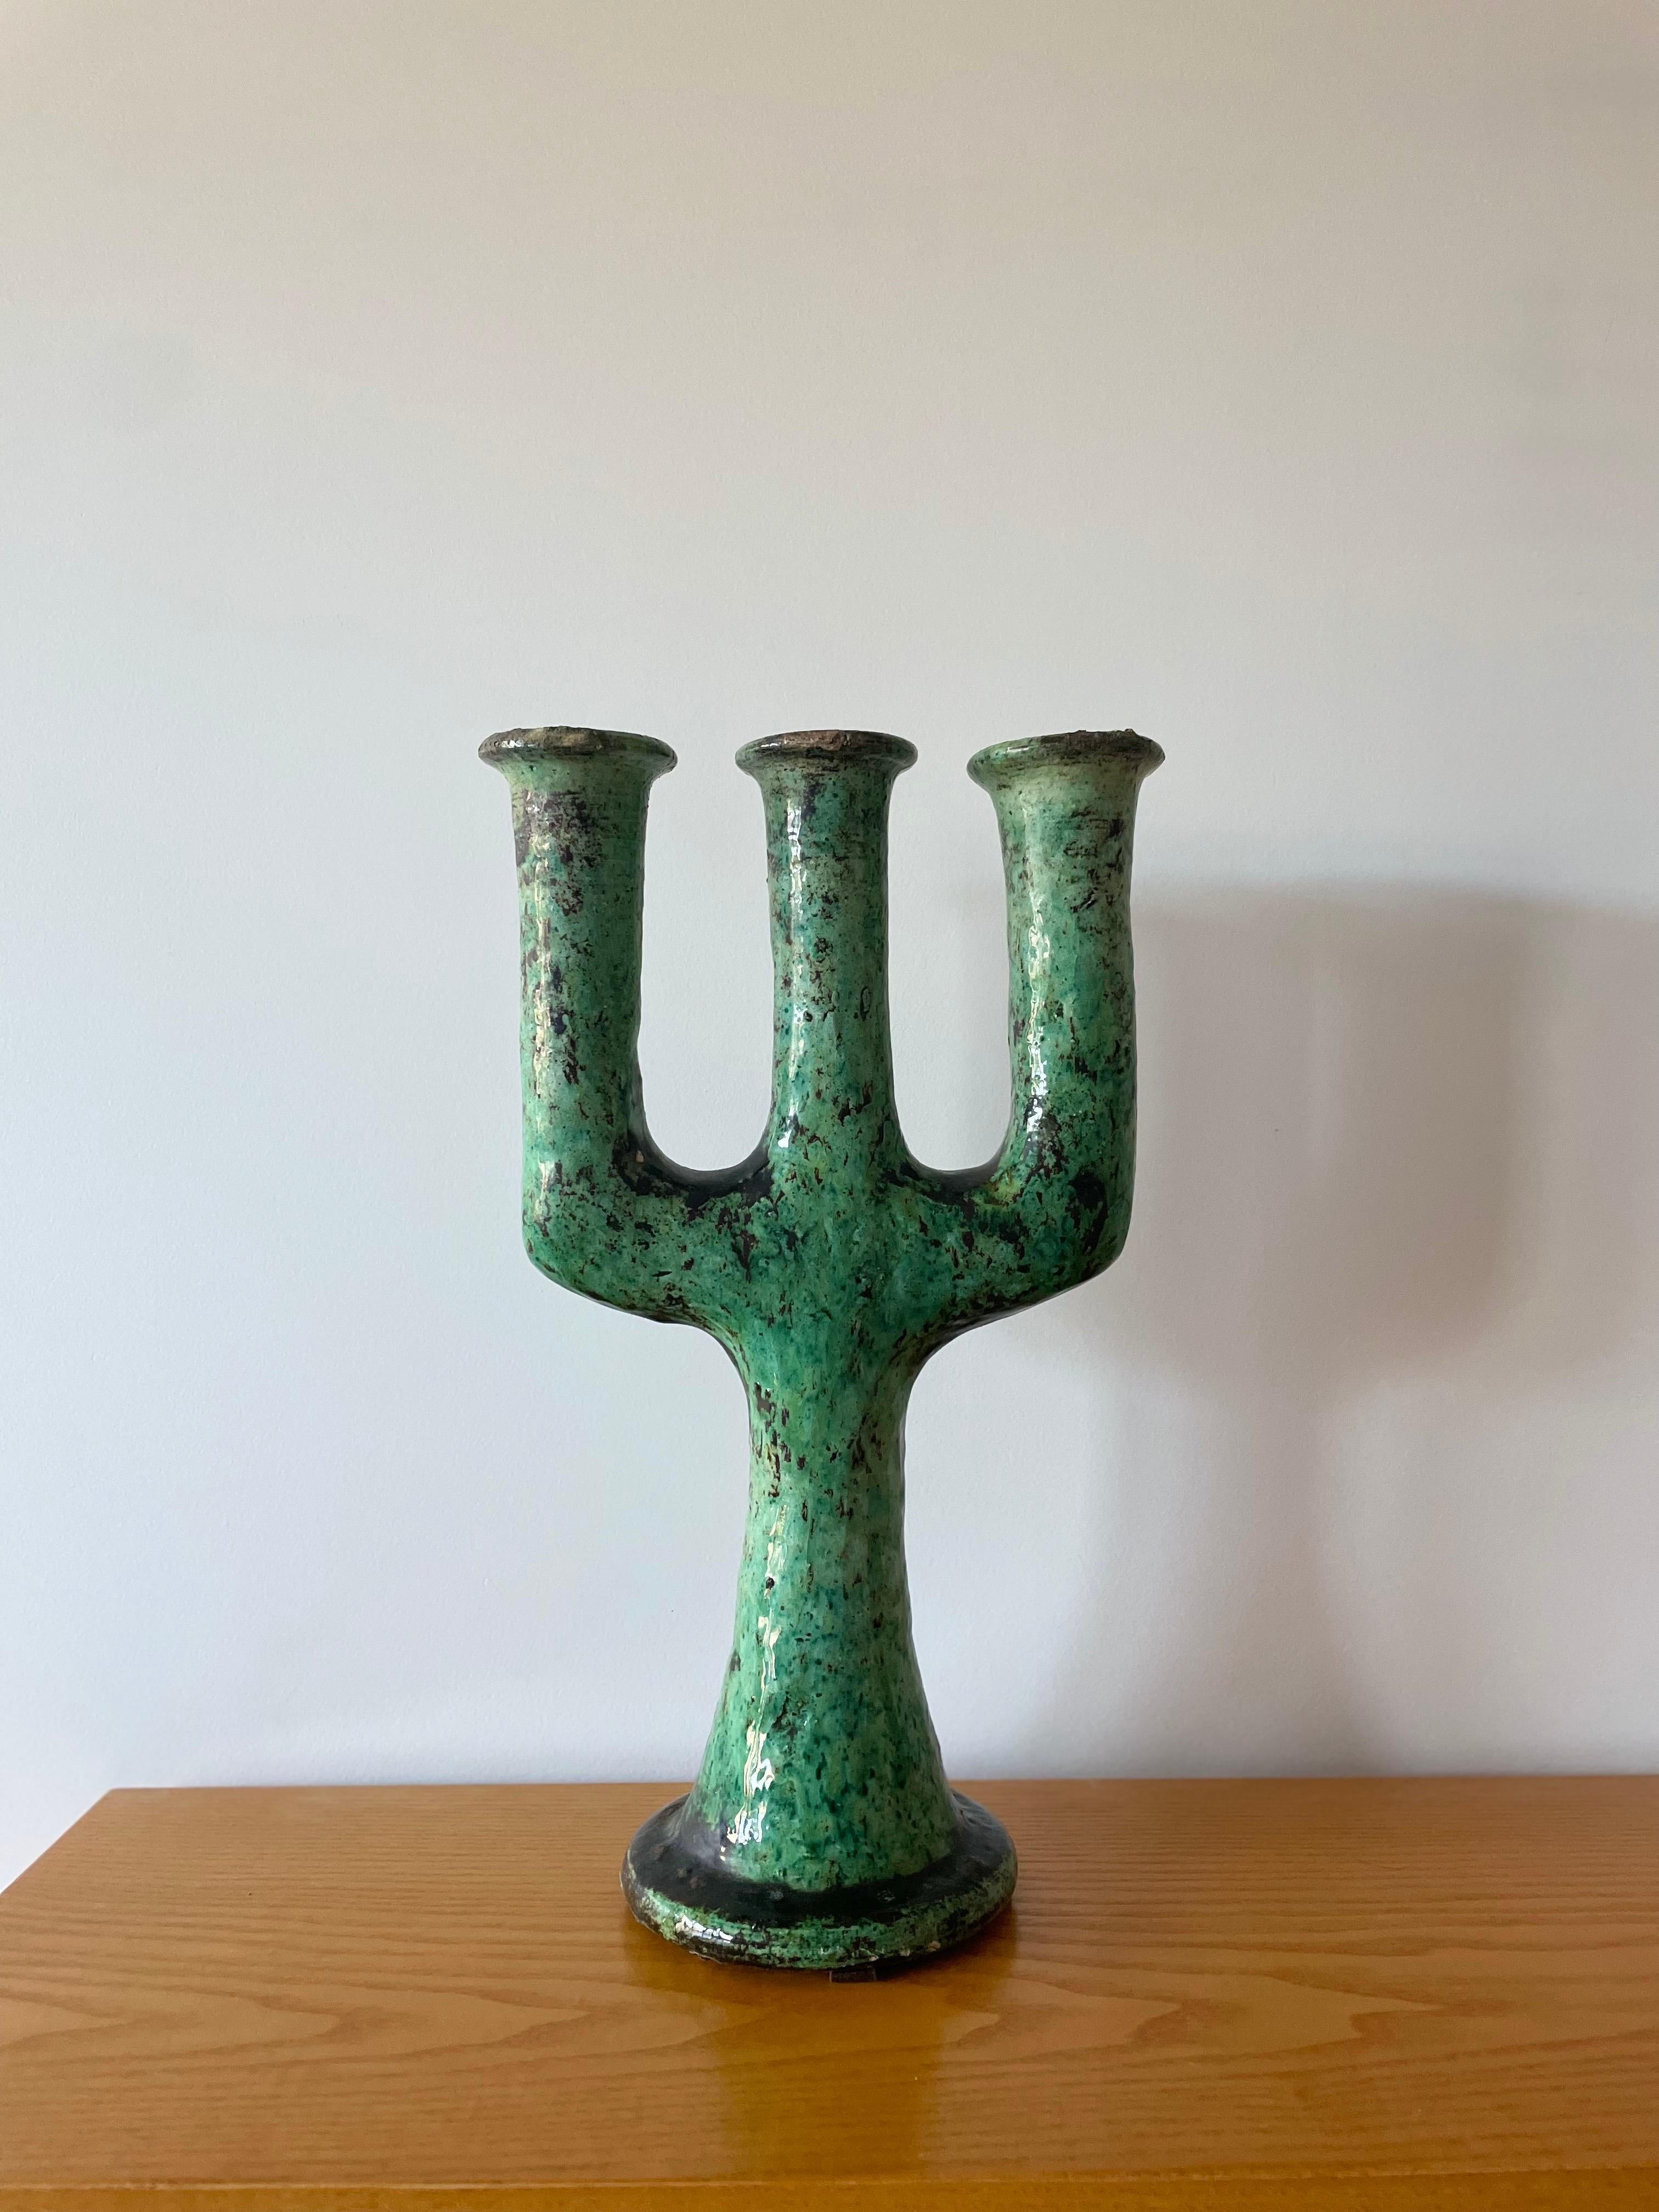 Bougeoir marocain en céramique Tamegroute dans le style de Giacometti

Ce chandelier vintage émaillé vert est une simple sculpture du village de Tamegroute, dans le sud du Maroc, où d'habiles potiers ont pratiqué des techniques locales qui ont été